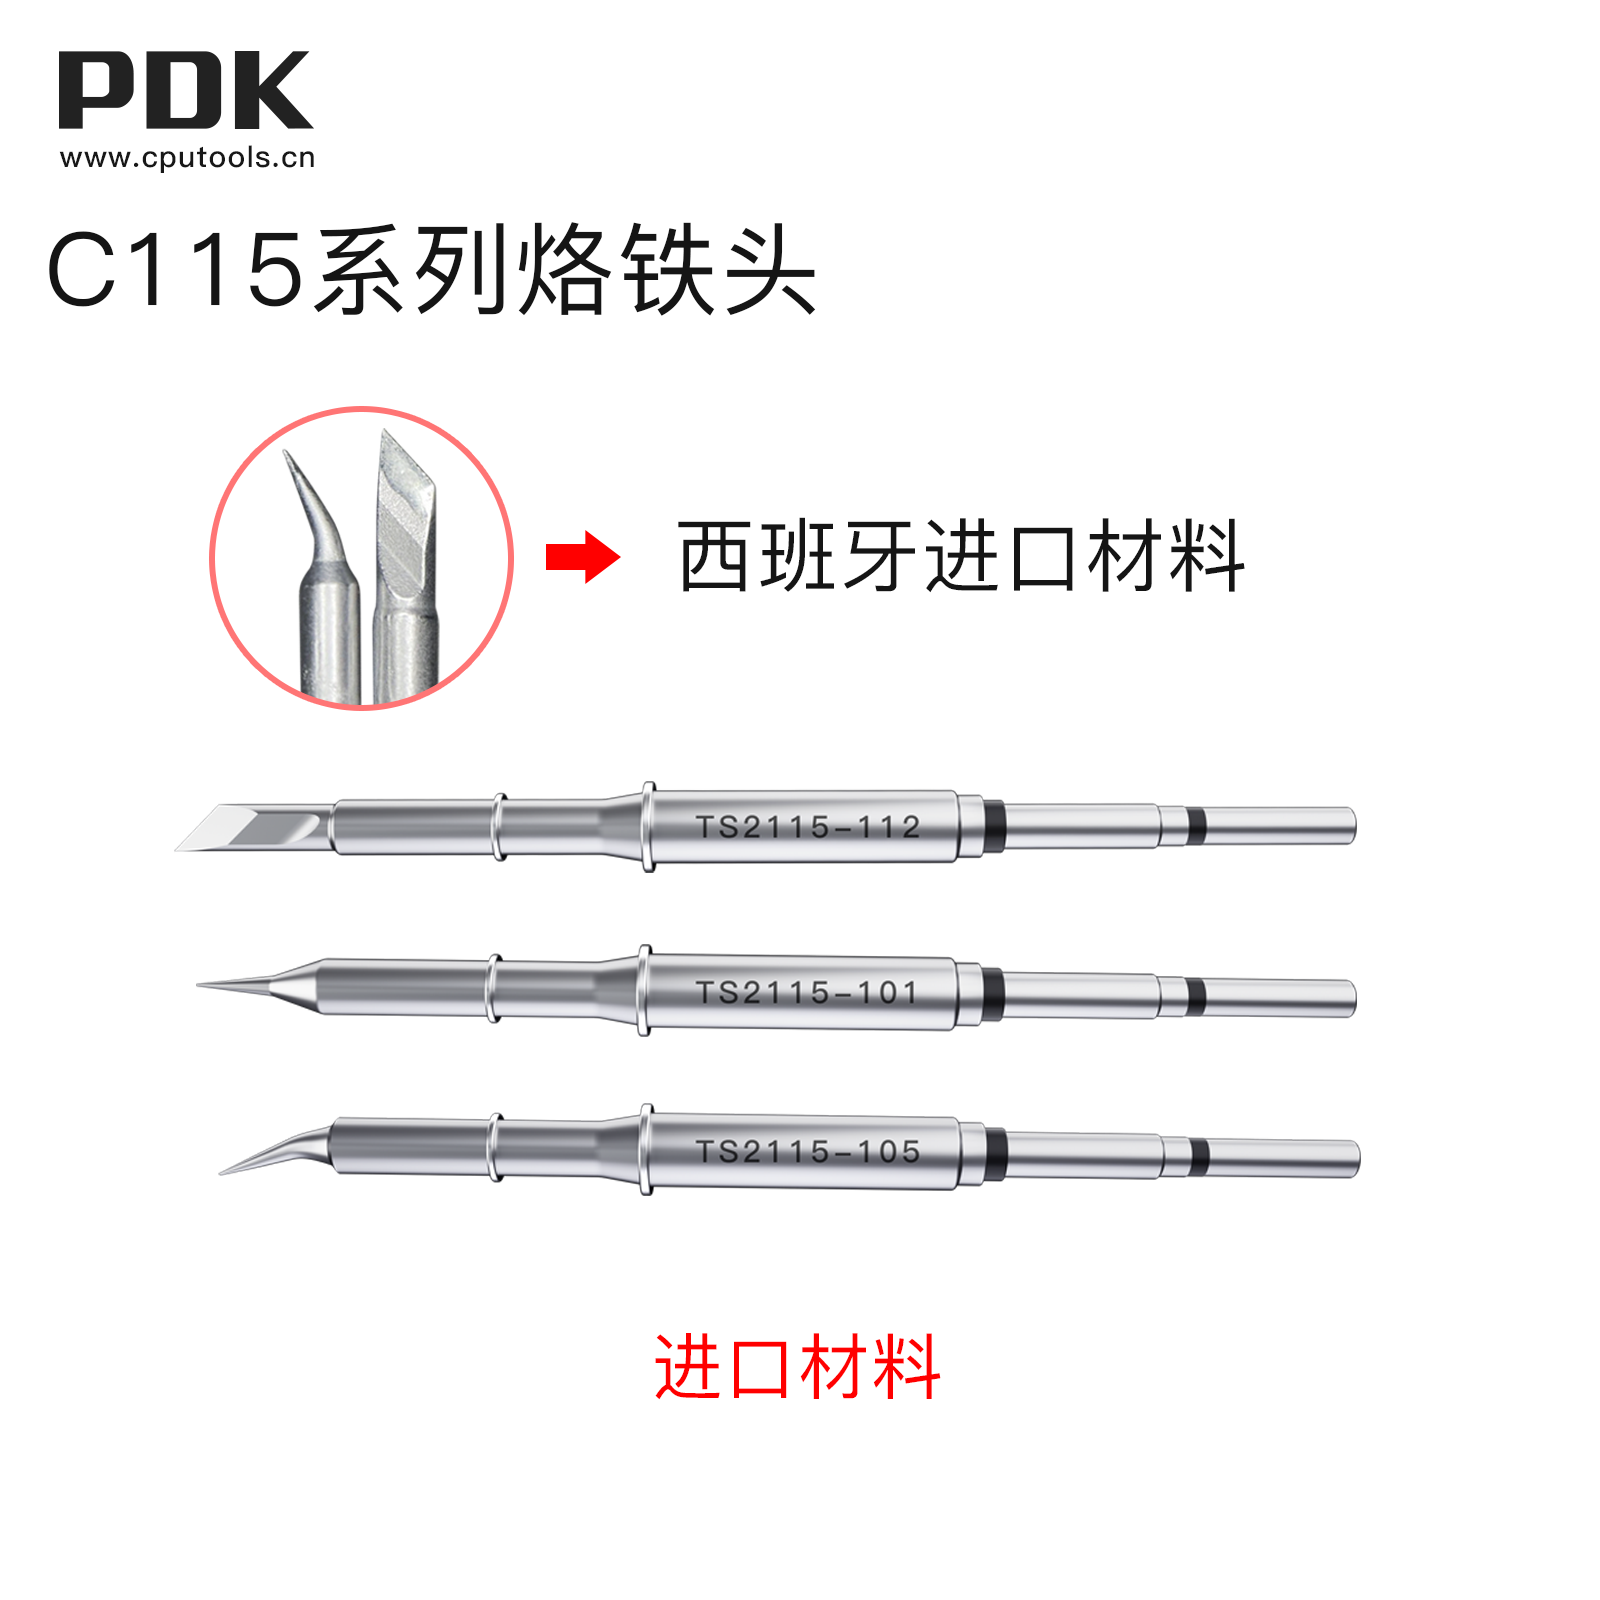 PDK TS2115进口材料烙铁头(图2)